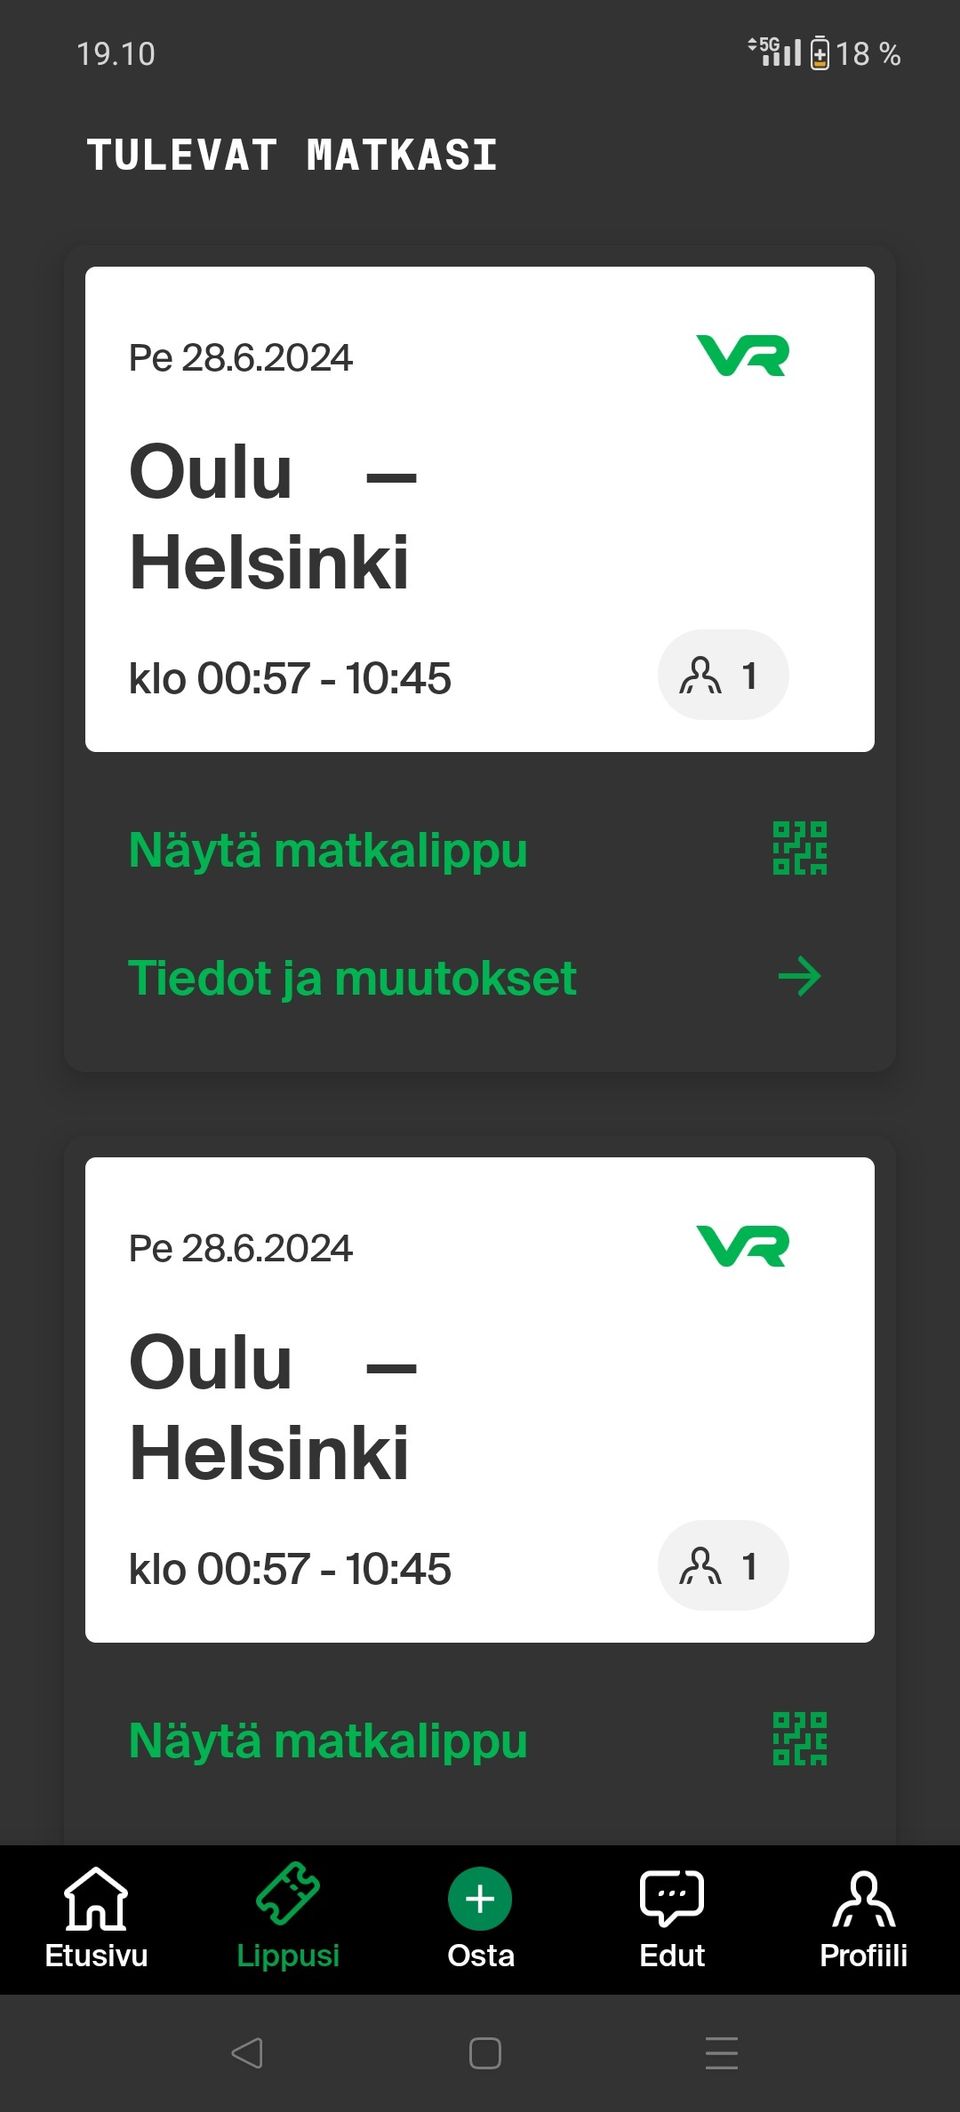 4 kpl VR junalipppuja OULU-HELSINKI(vastakkaiset paikat) Pe 28.6